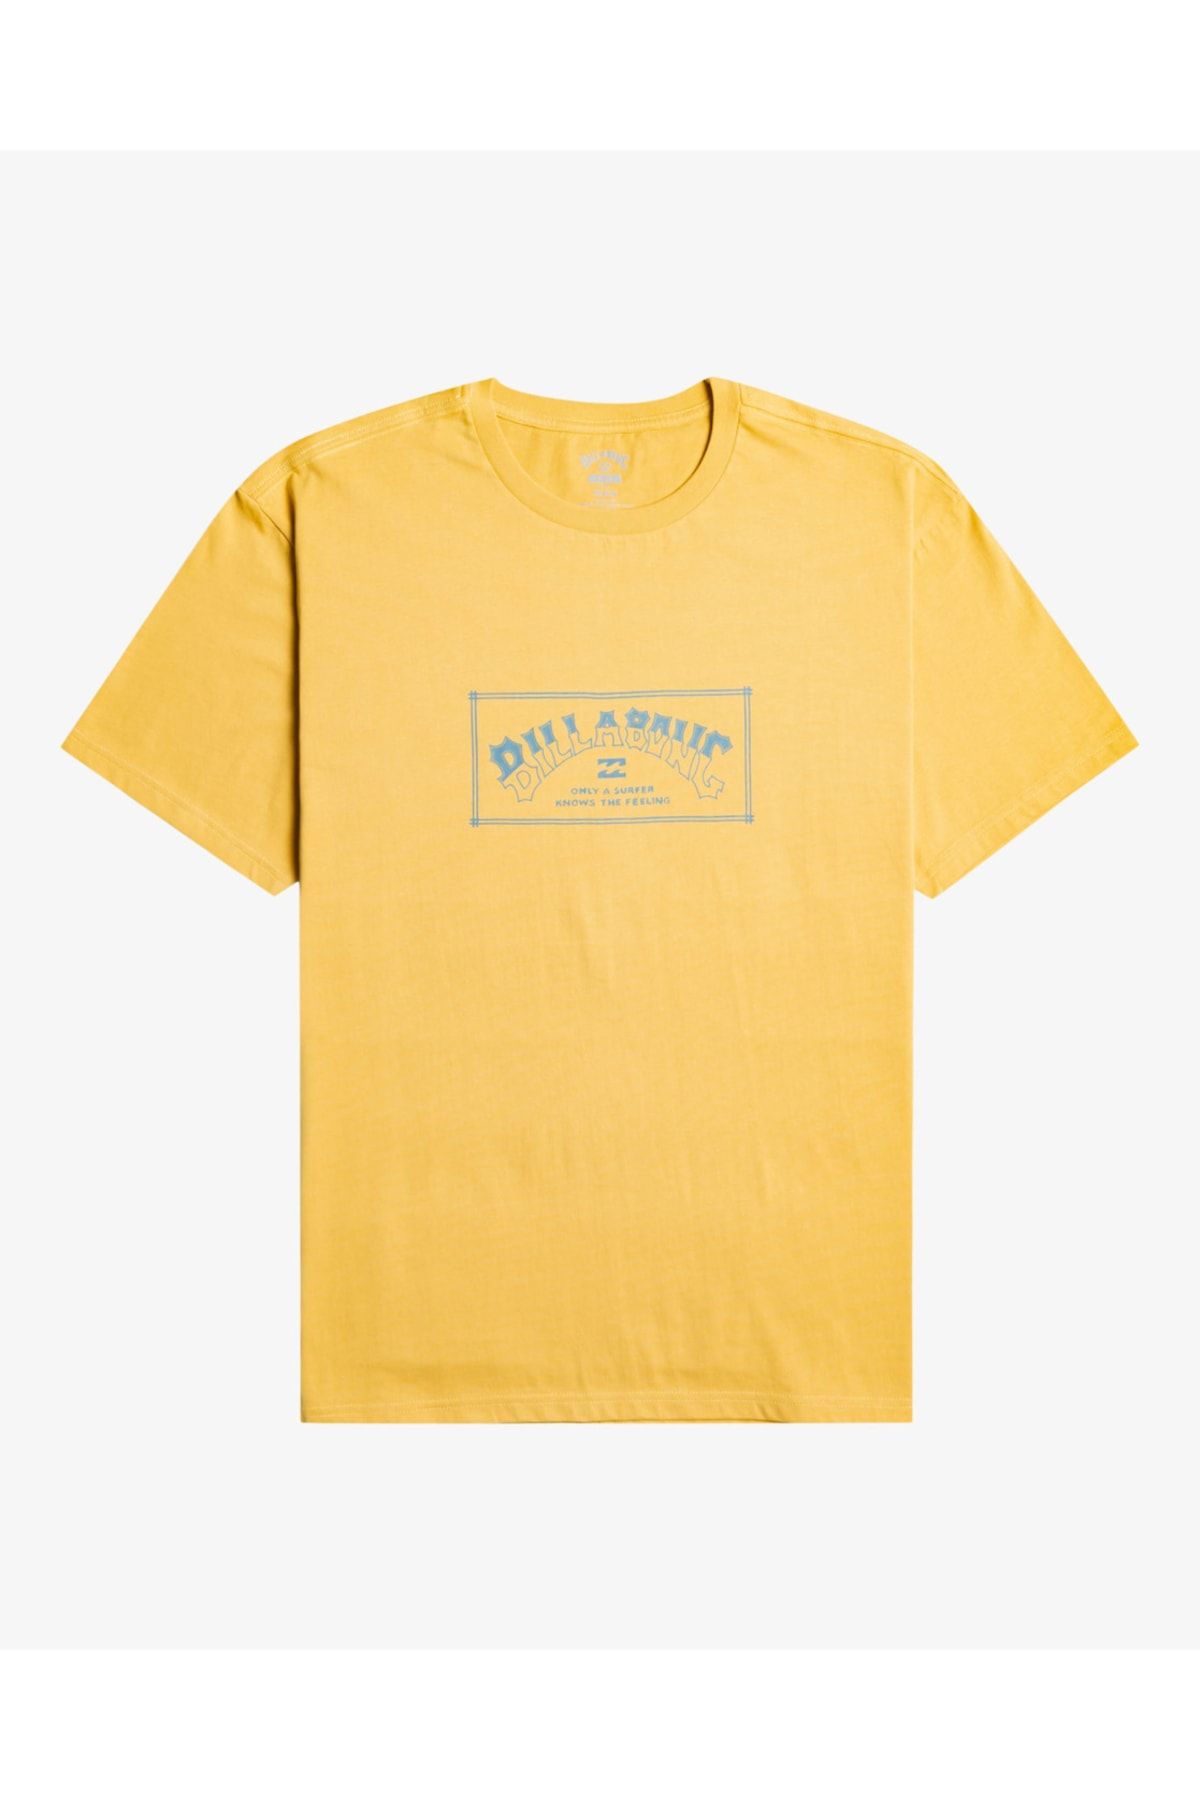 Billabong Arch - Erkek T-shirt